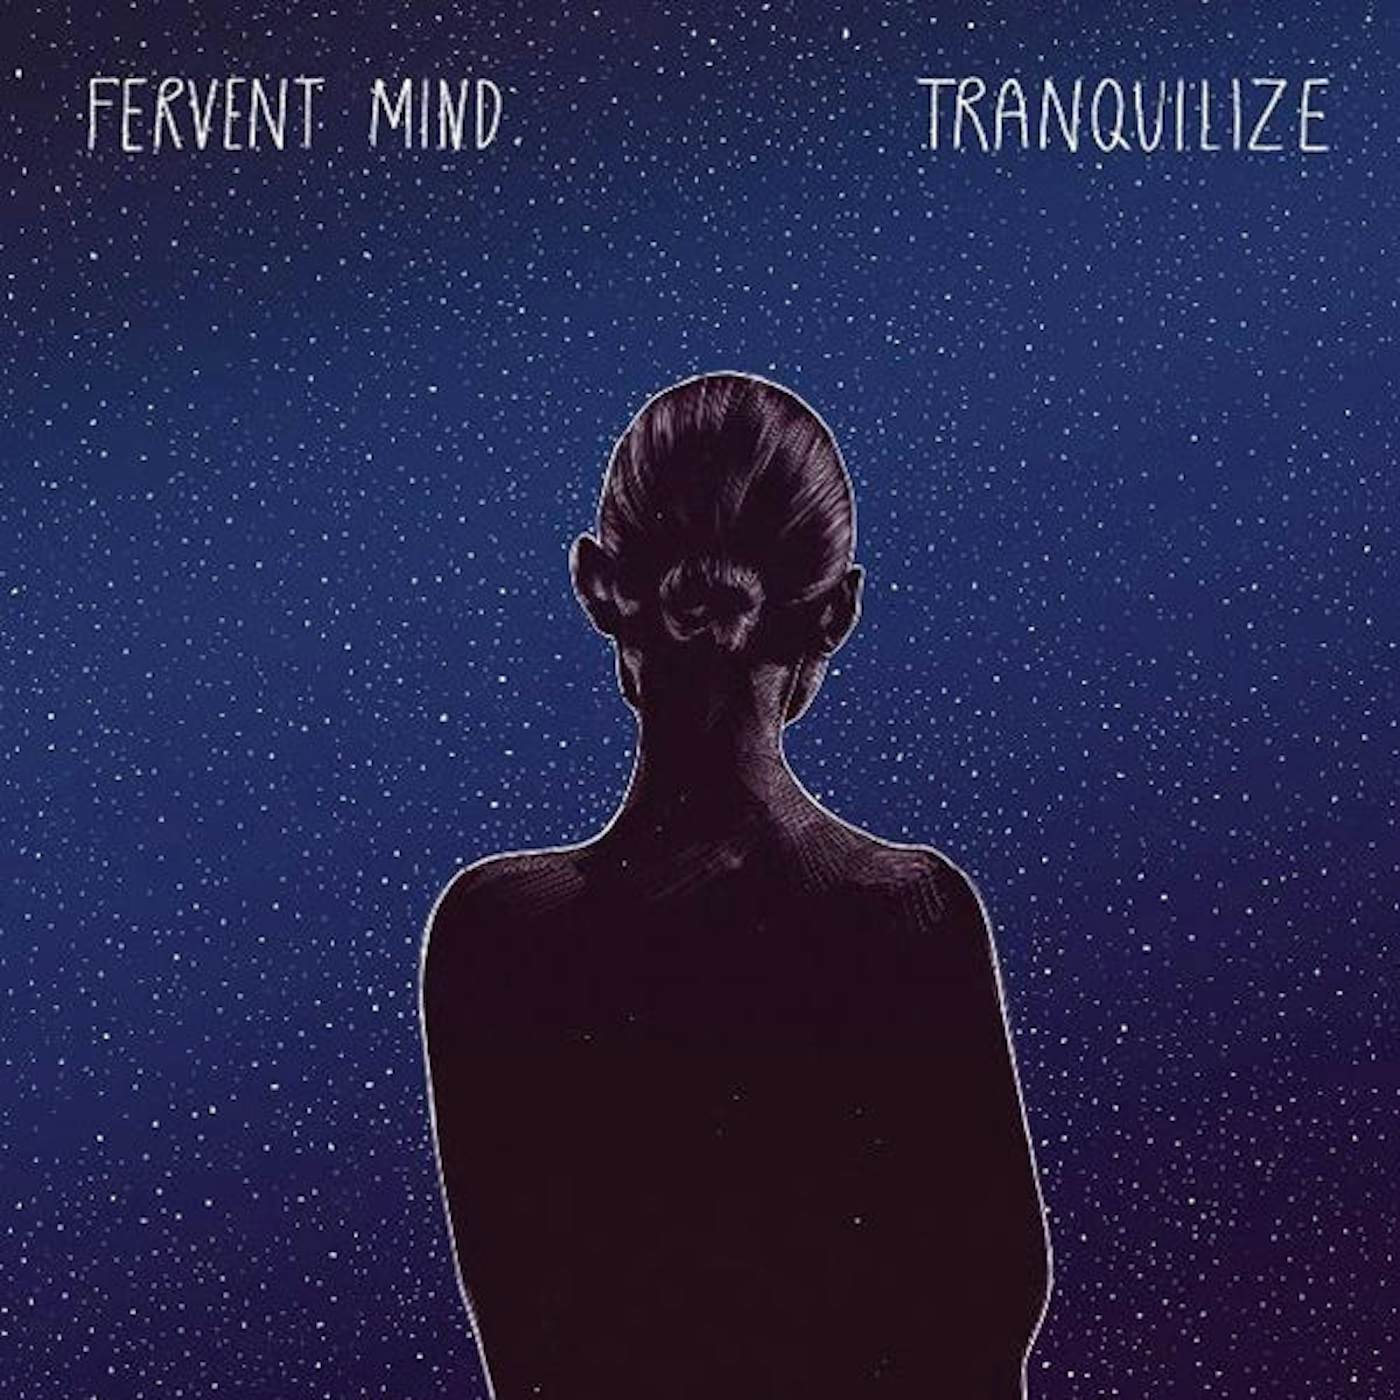 Fervent Mind LP - Tranquilize (Vinyl)